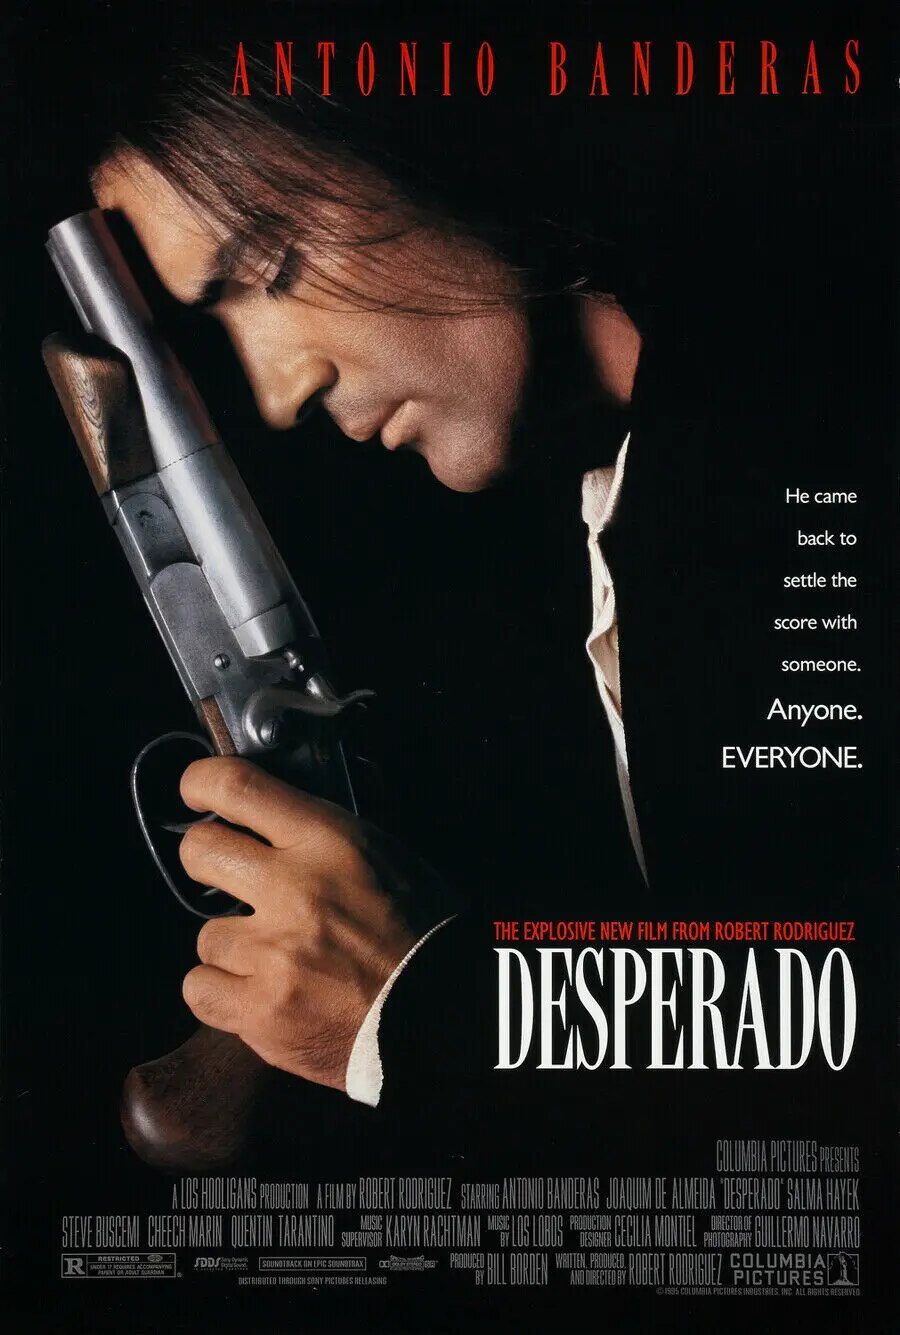 Desperado - Antonio Banderas And Salma Hayek Movie Poster-30x45cm-